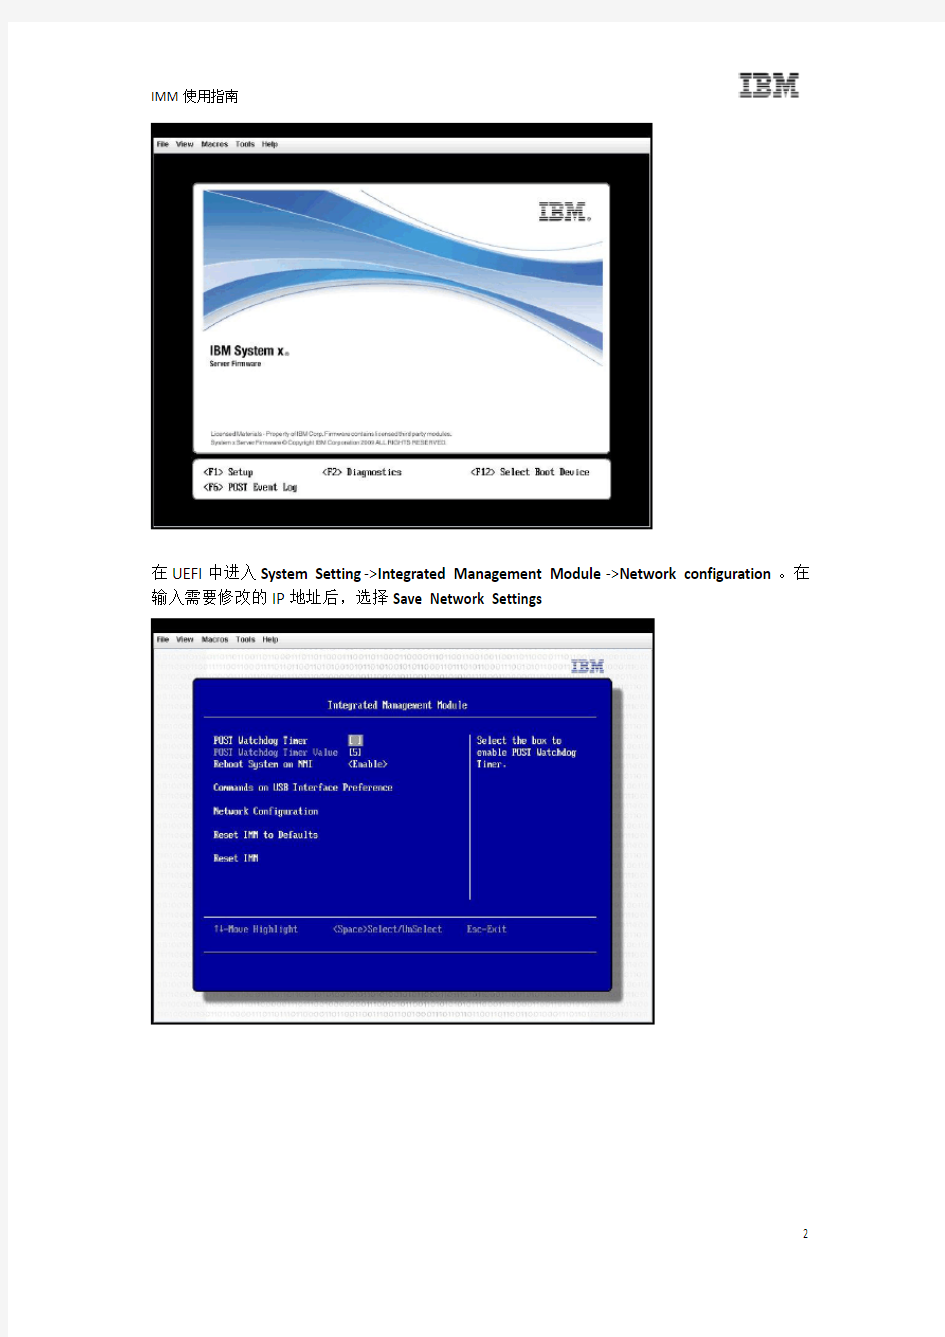 IBM IMM用户手册-远程管理卡